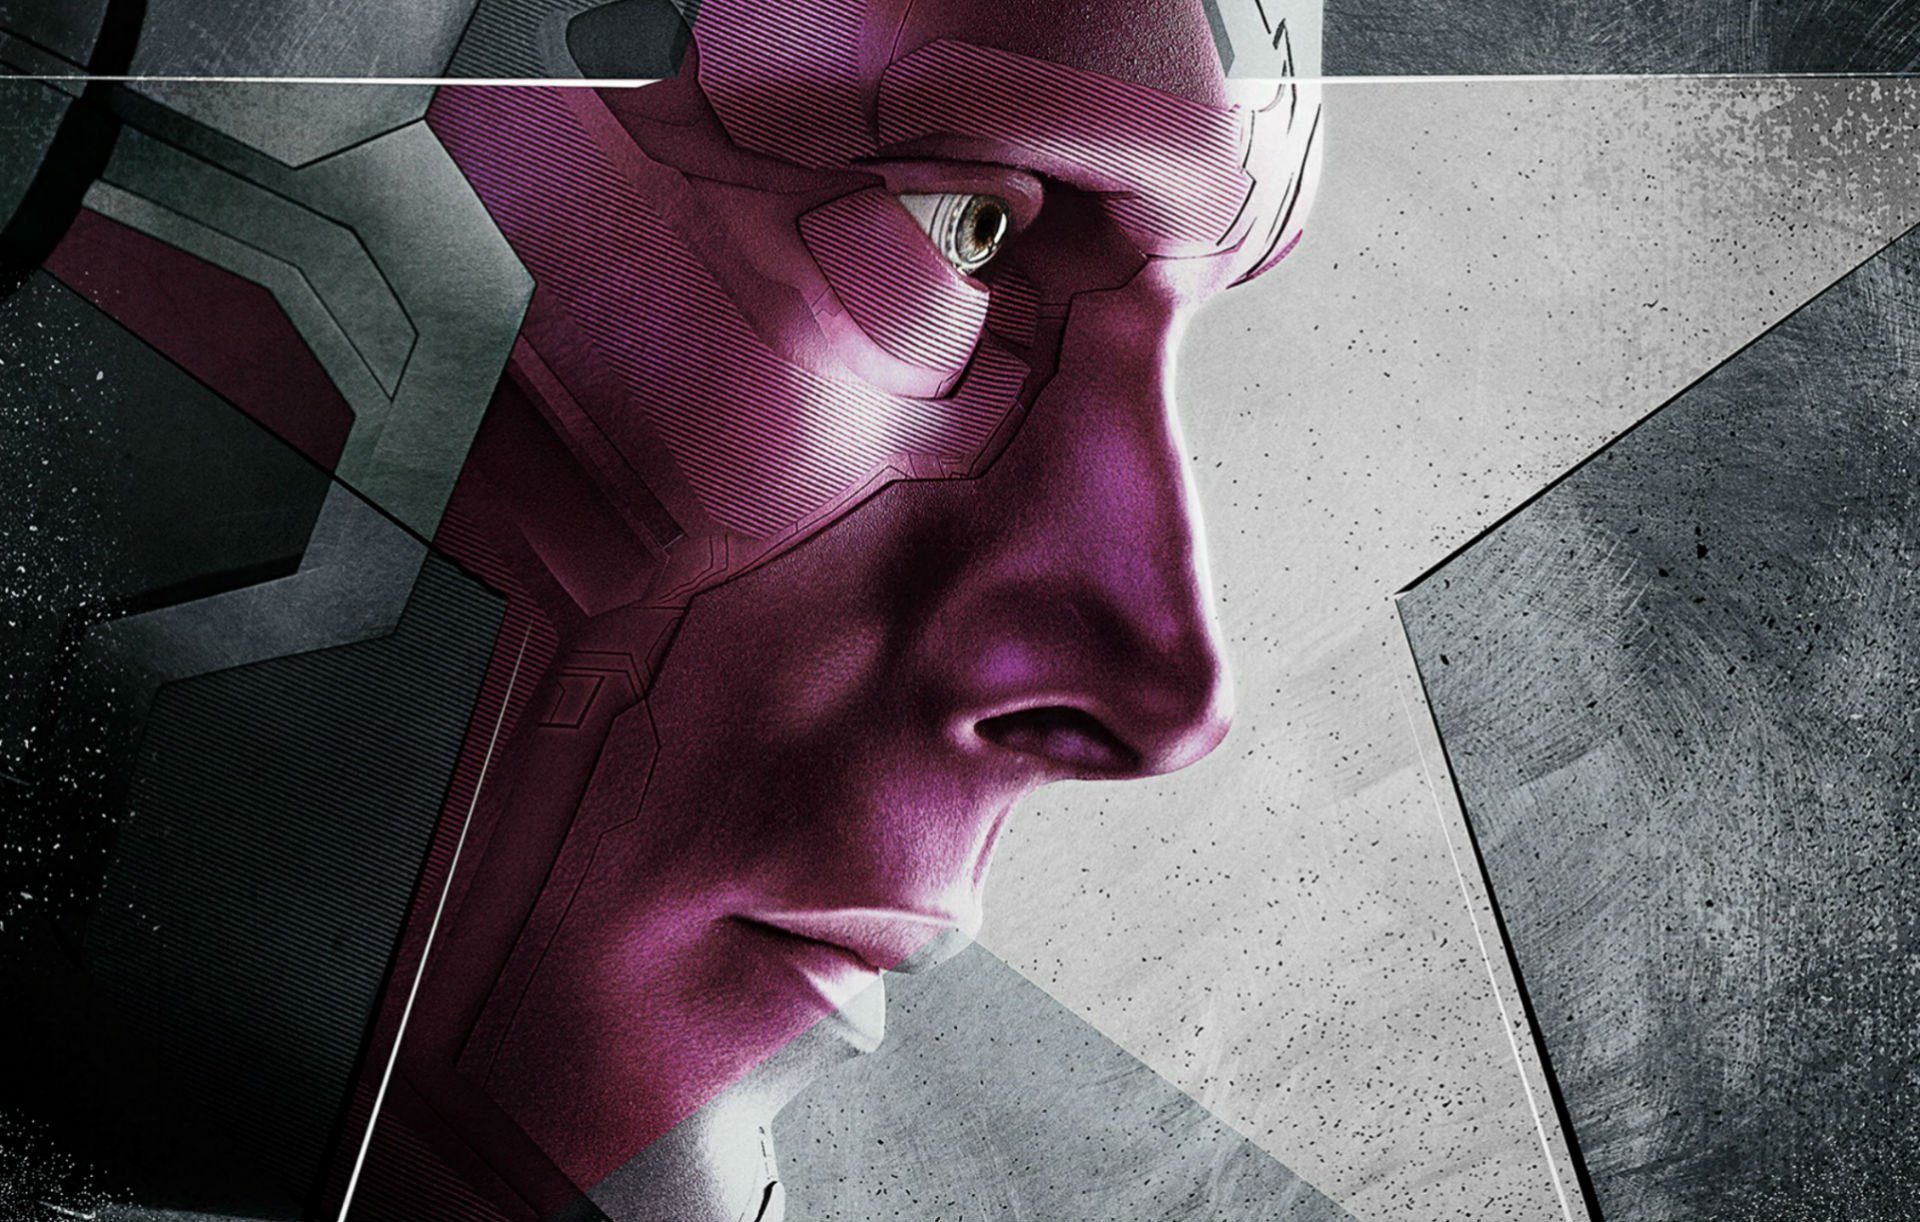 Captain America Civil War Full HD Wallpaper And